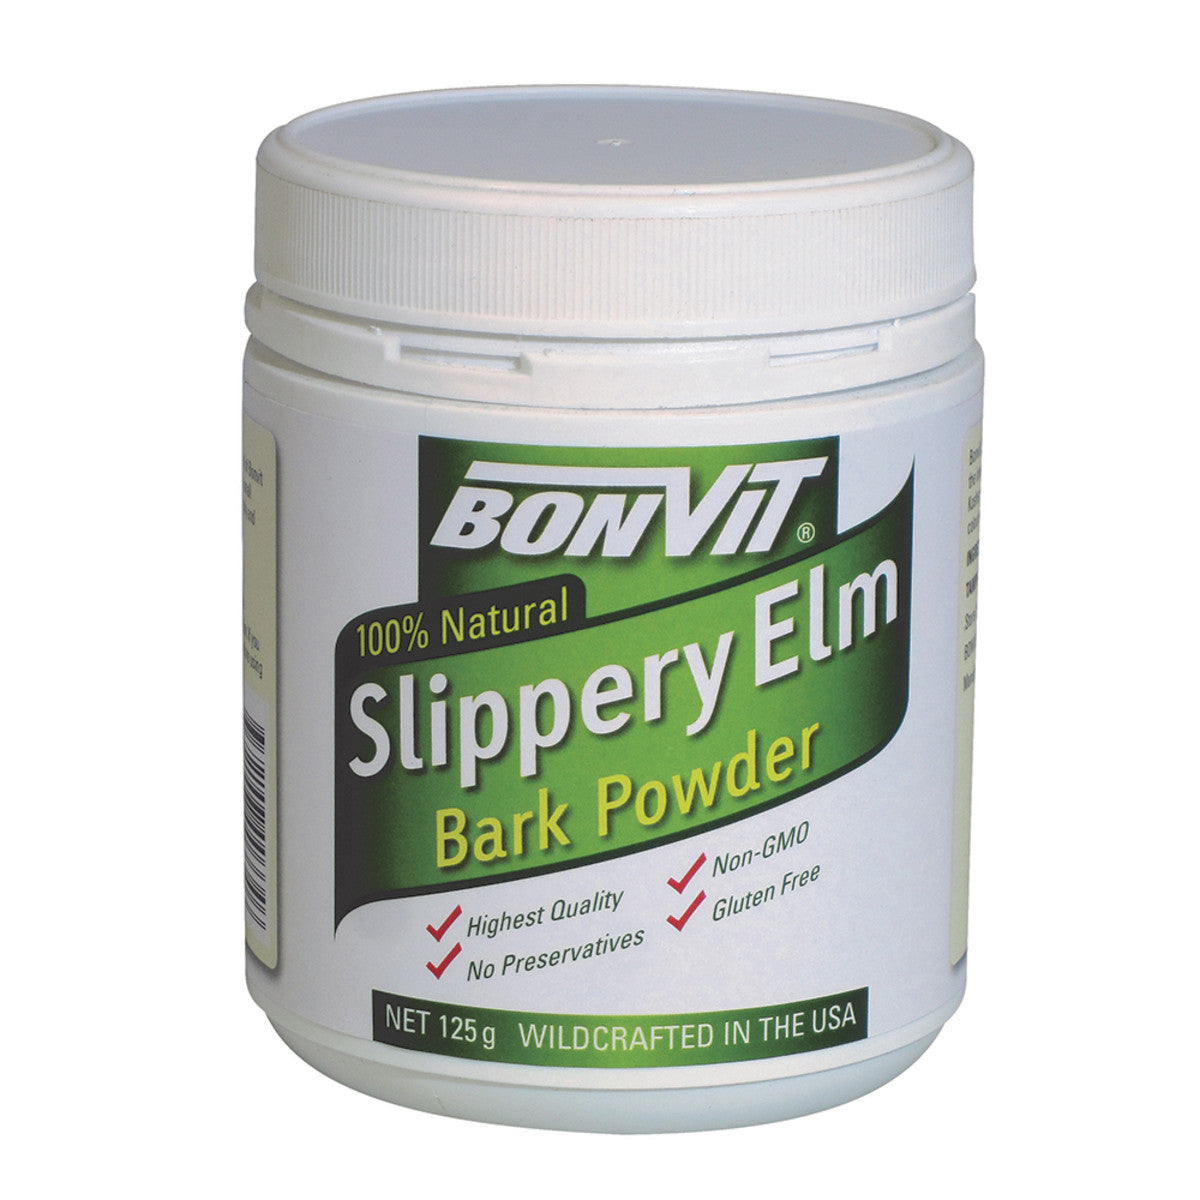 Bonvit Slippery Elm Bark Powder 125g, 100% Natural